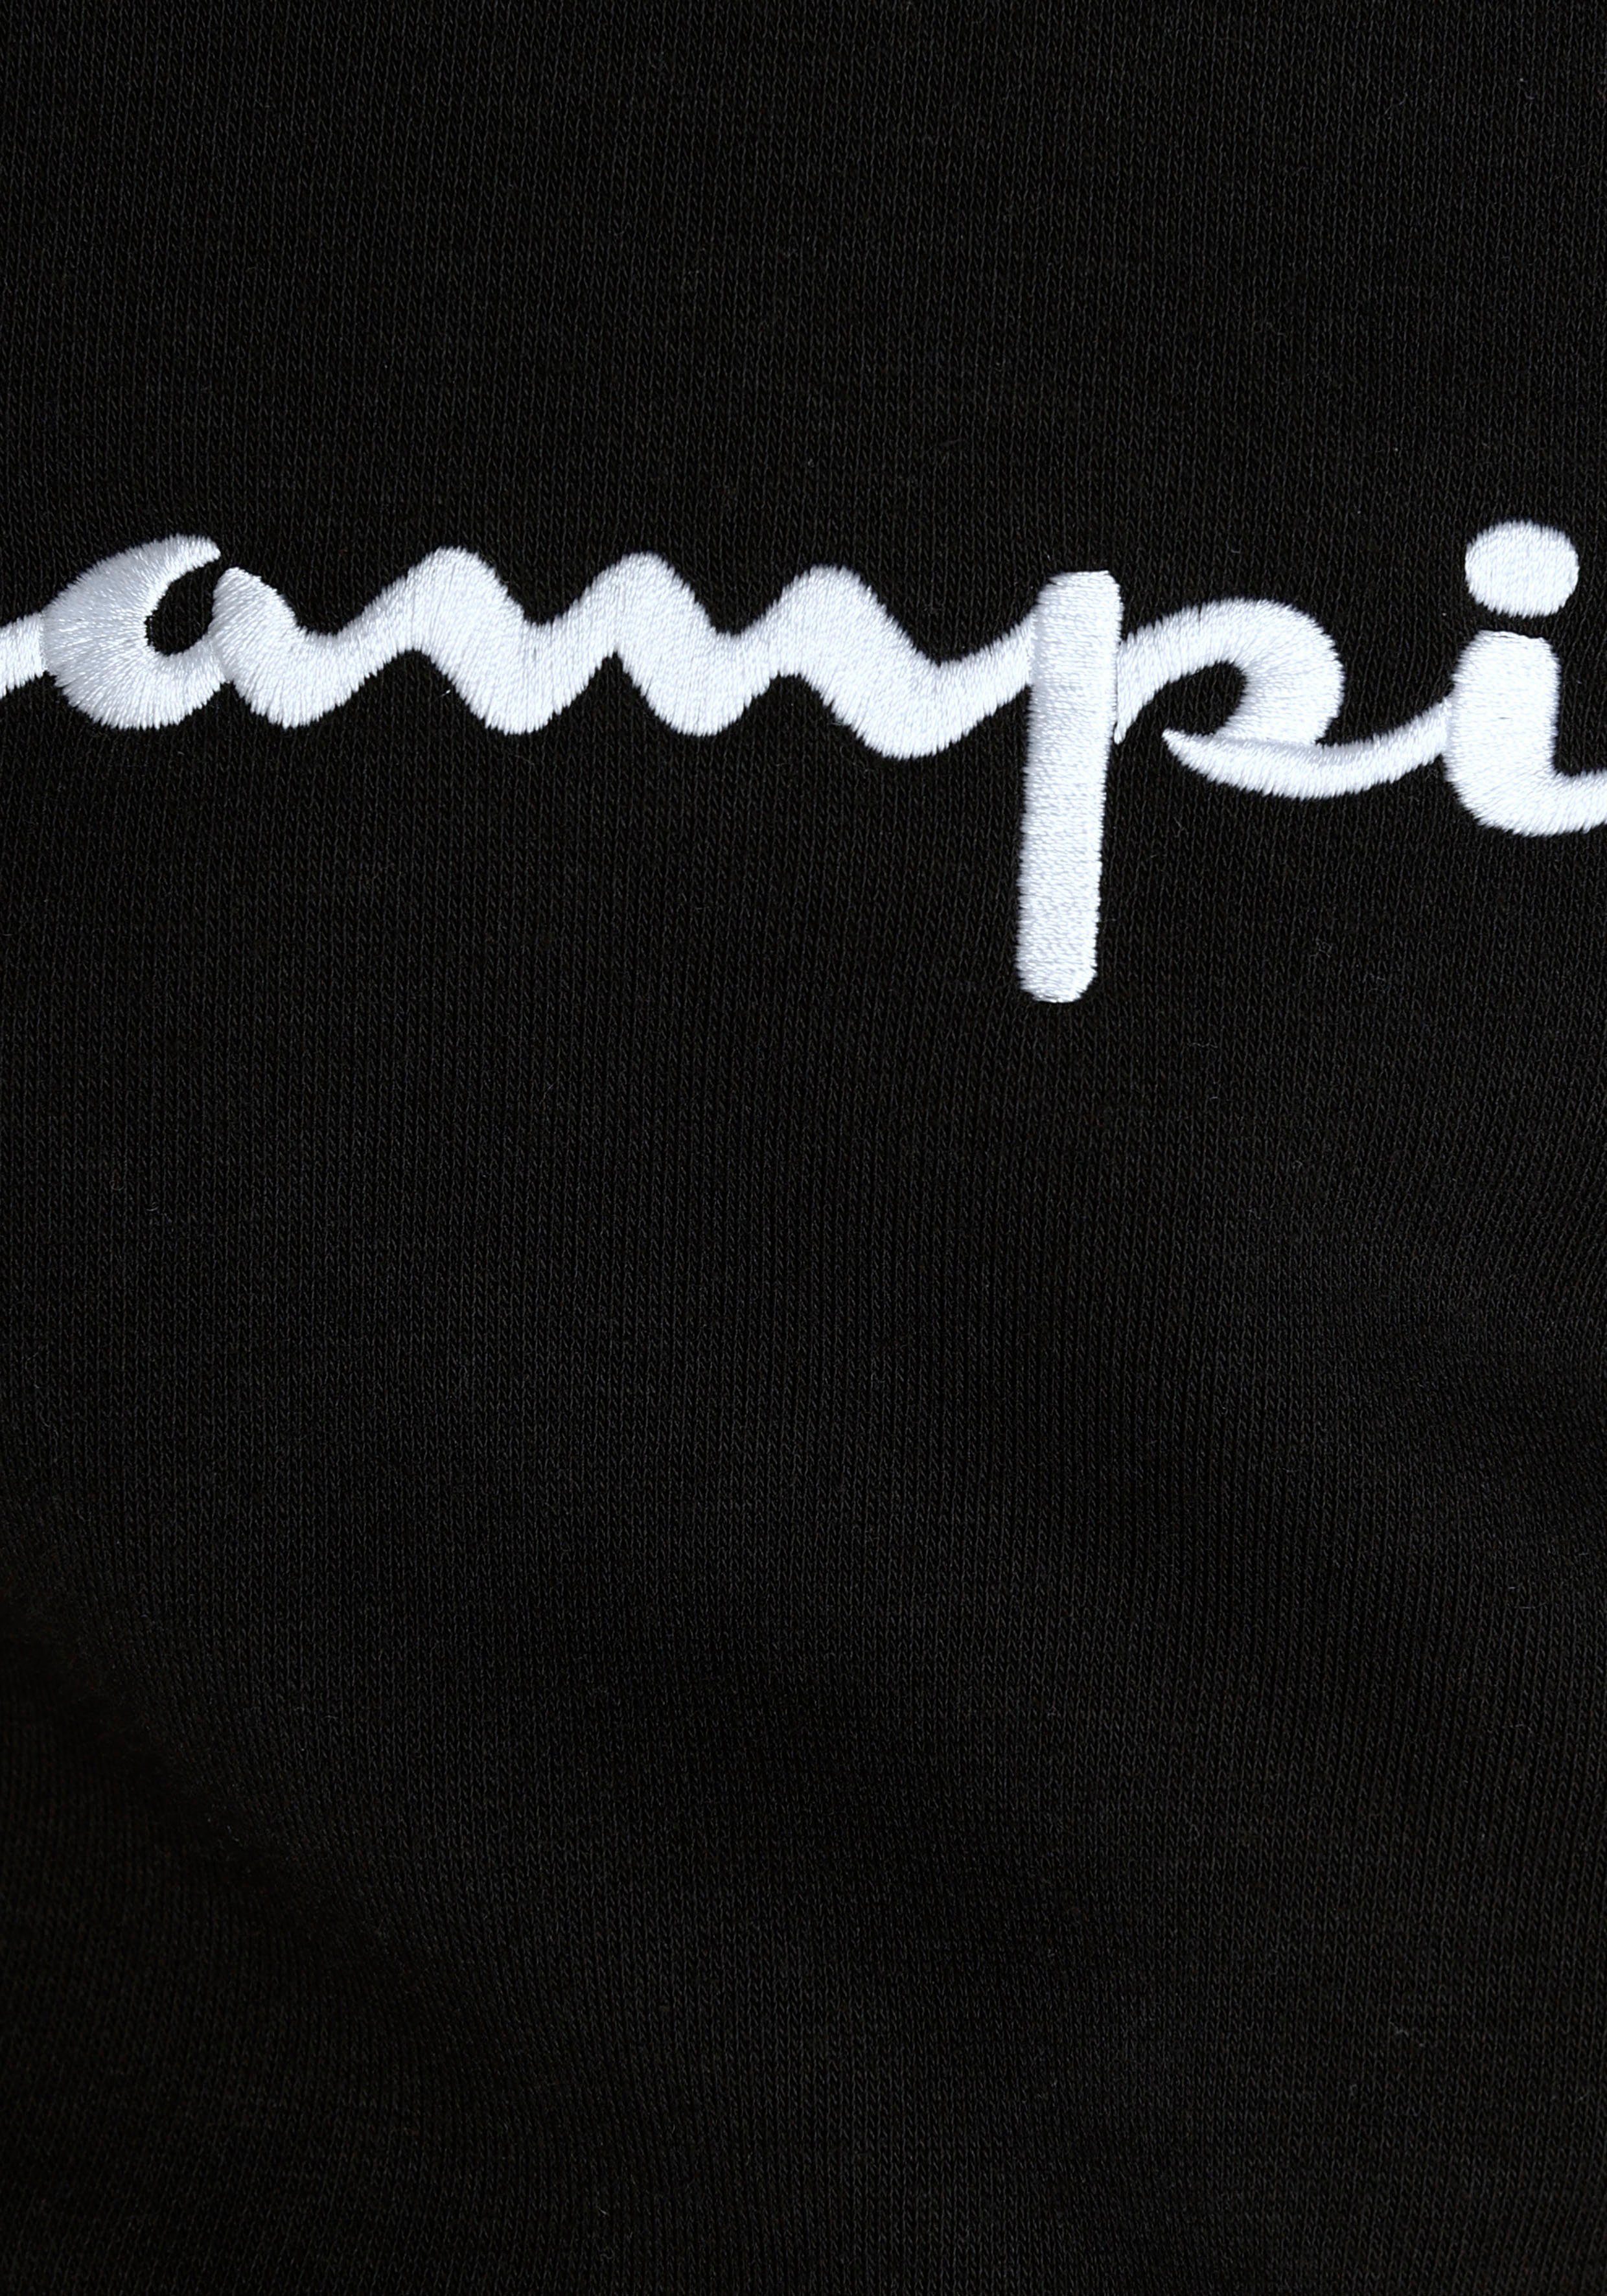 Logo Sweatshirt Classic - Kinder large schwarz Sweatshirt für Hooded Champion